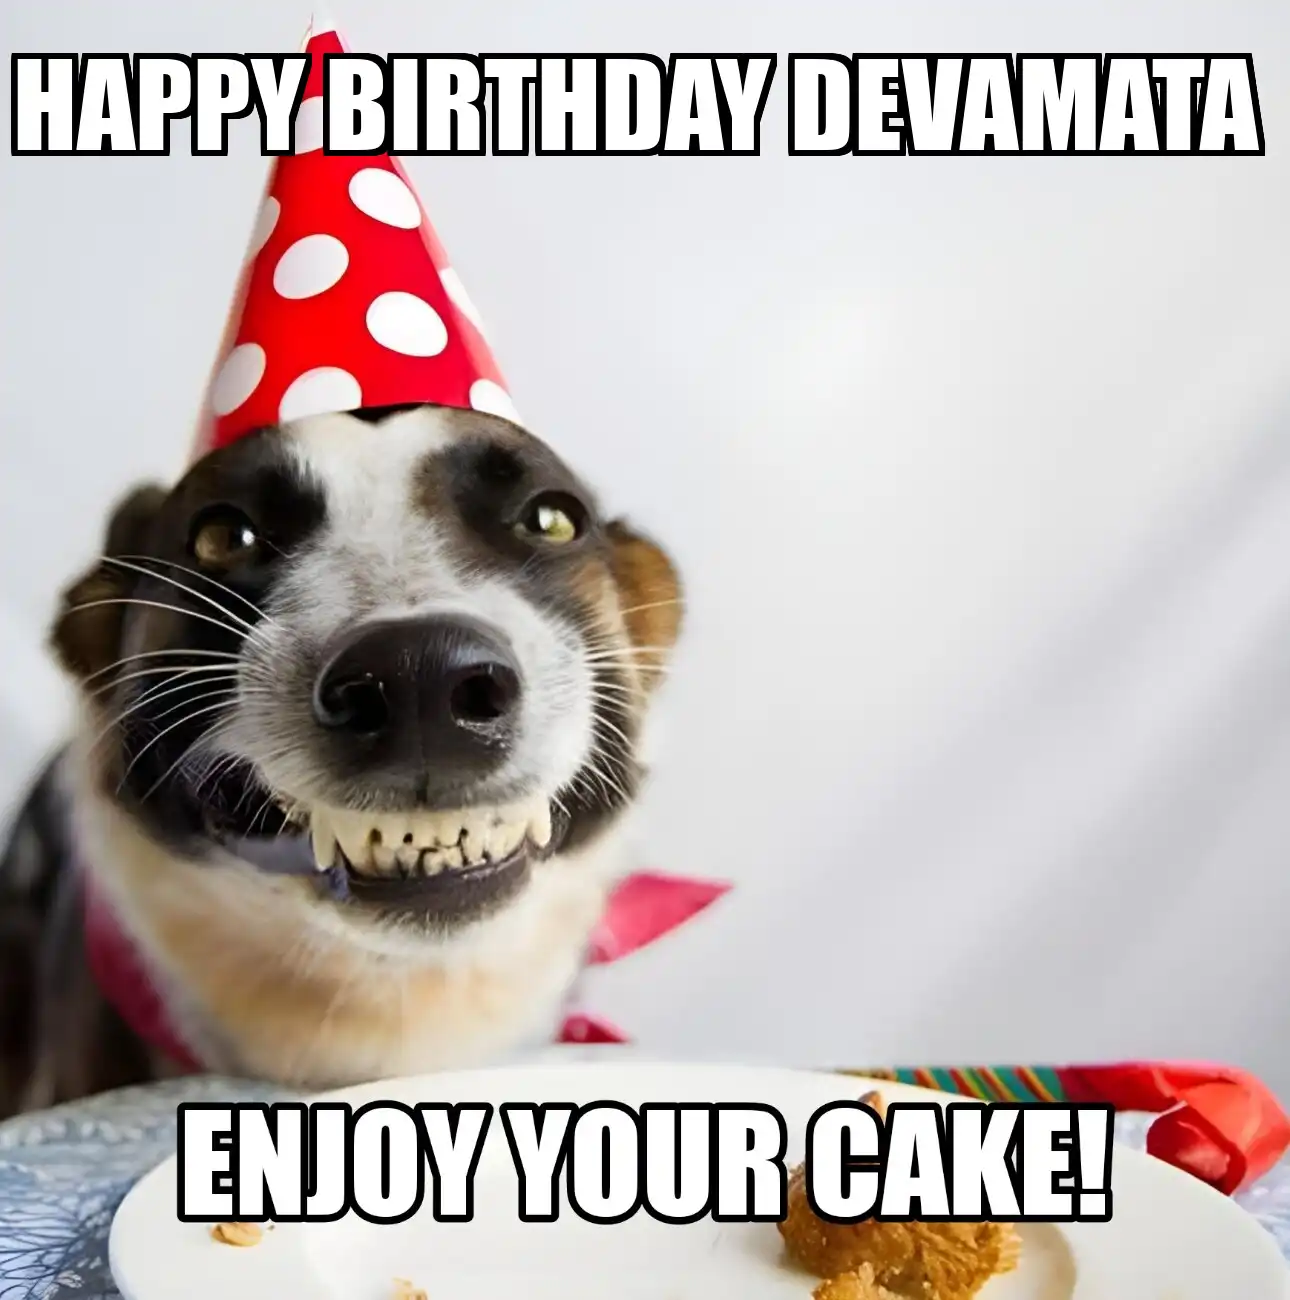 Happy Birthday Devamata Enjoy Your Cake Dog Meme